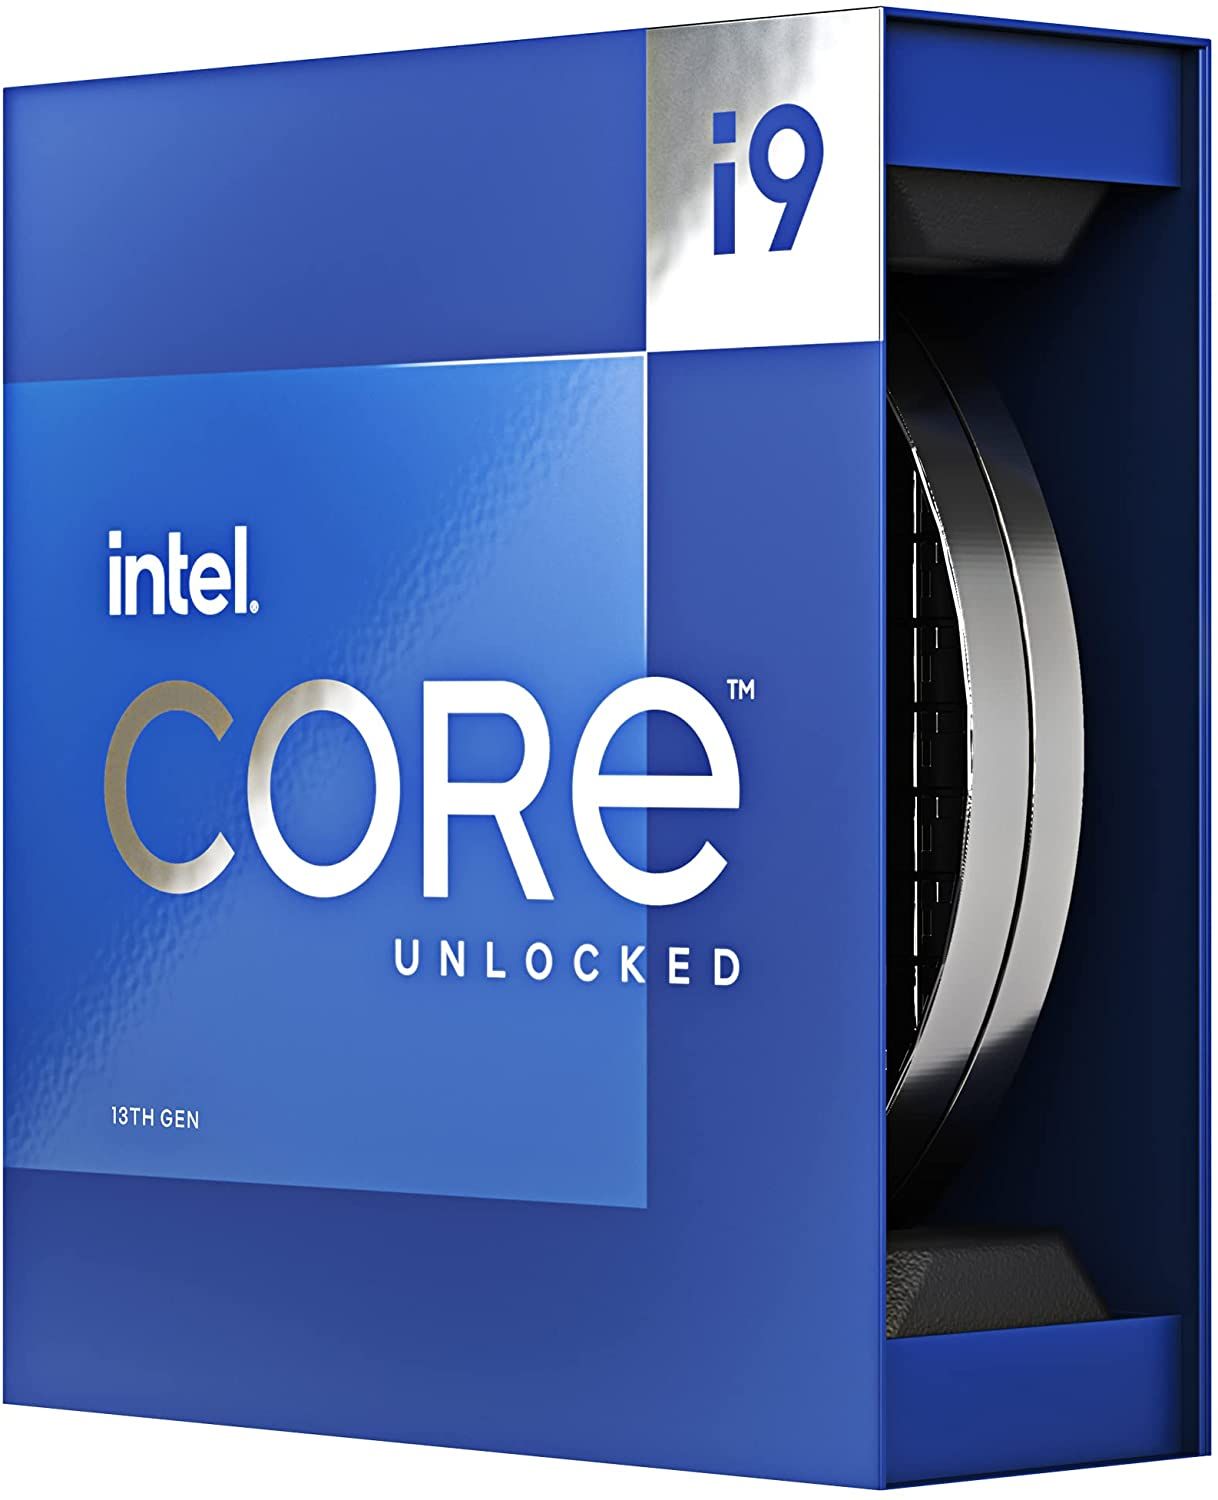 AMD Ryzen 7 7800X3D desktop CPU test: Sneller dan een Core i9-13900K  dankzij 3D V-Cache en slechts 8 cores 